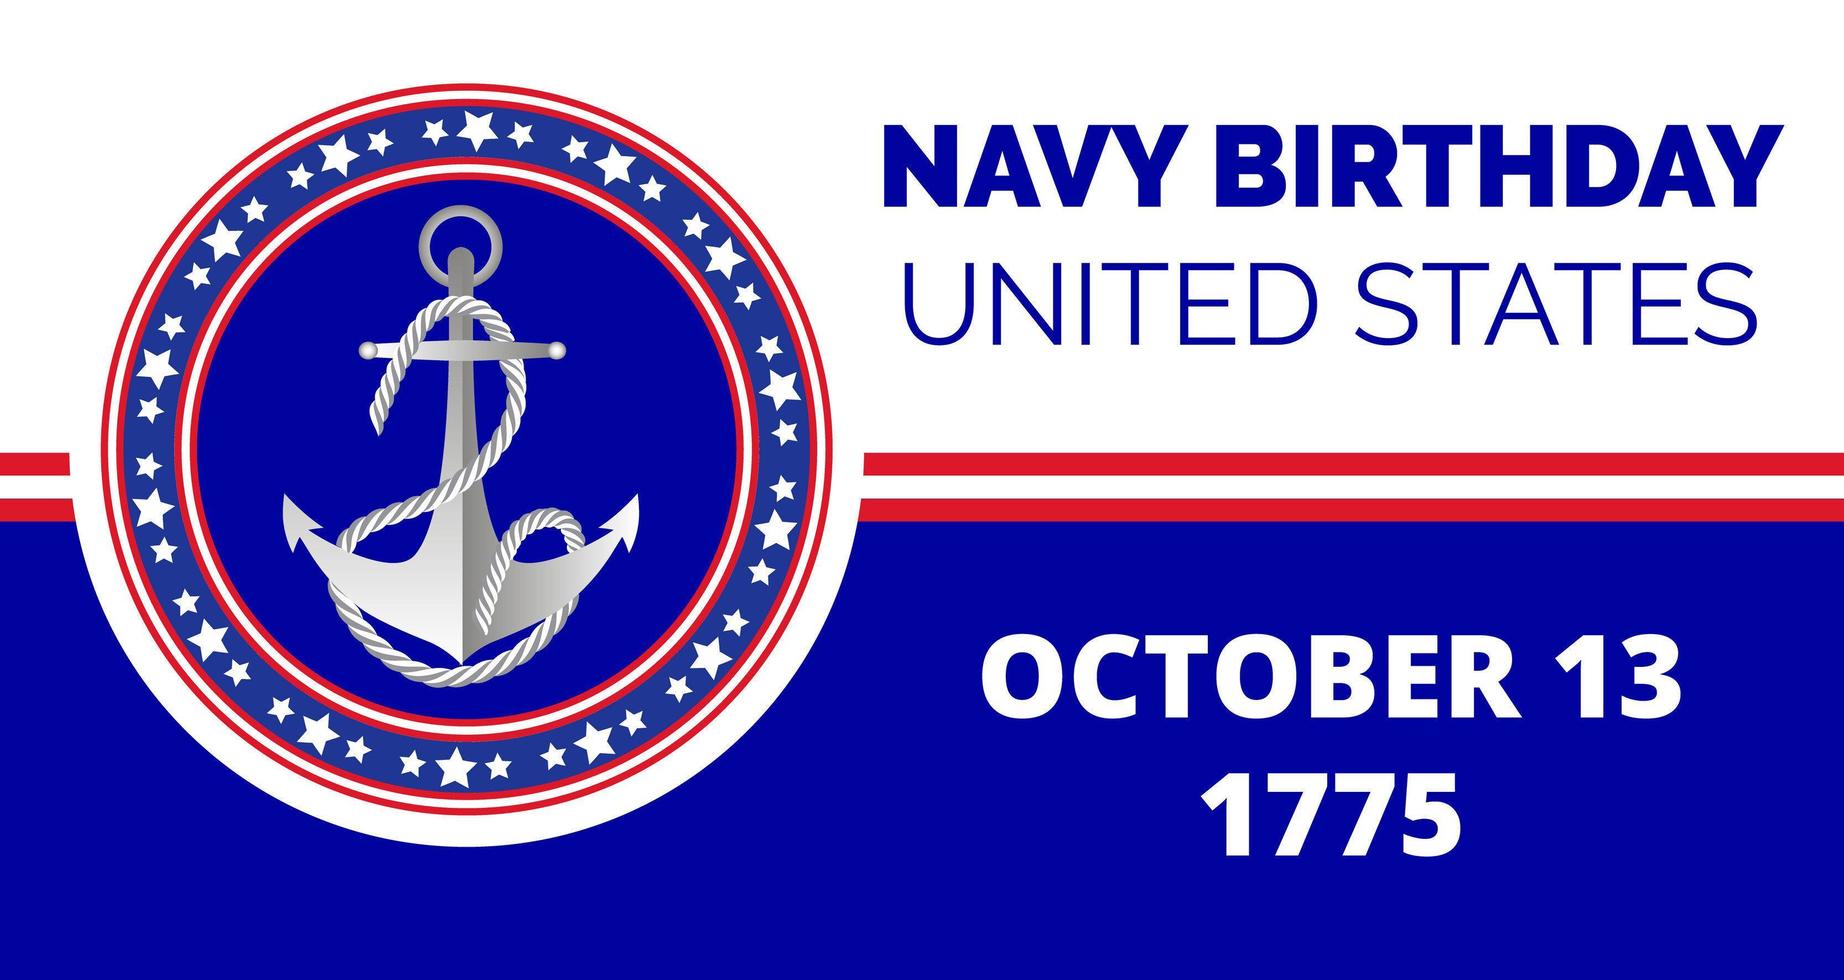 marinens födelsedag firades den 13 oktober 13 i usa. emblem med ankare, flagga, rep vektor